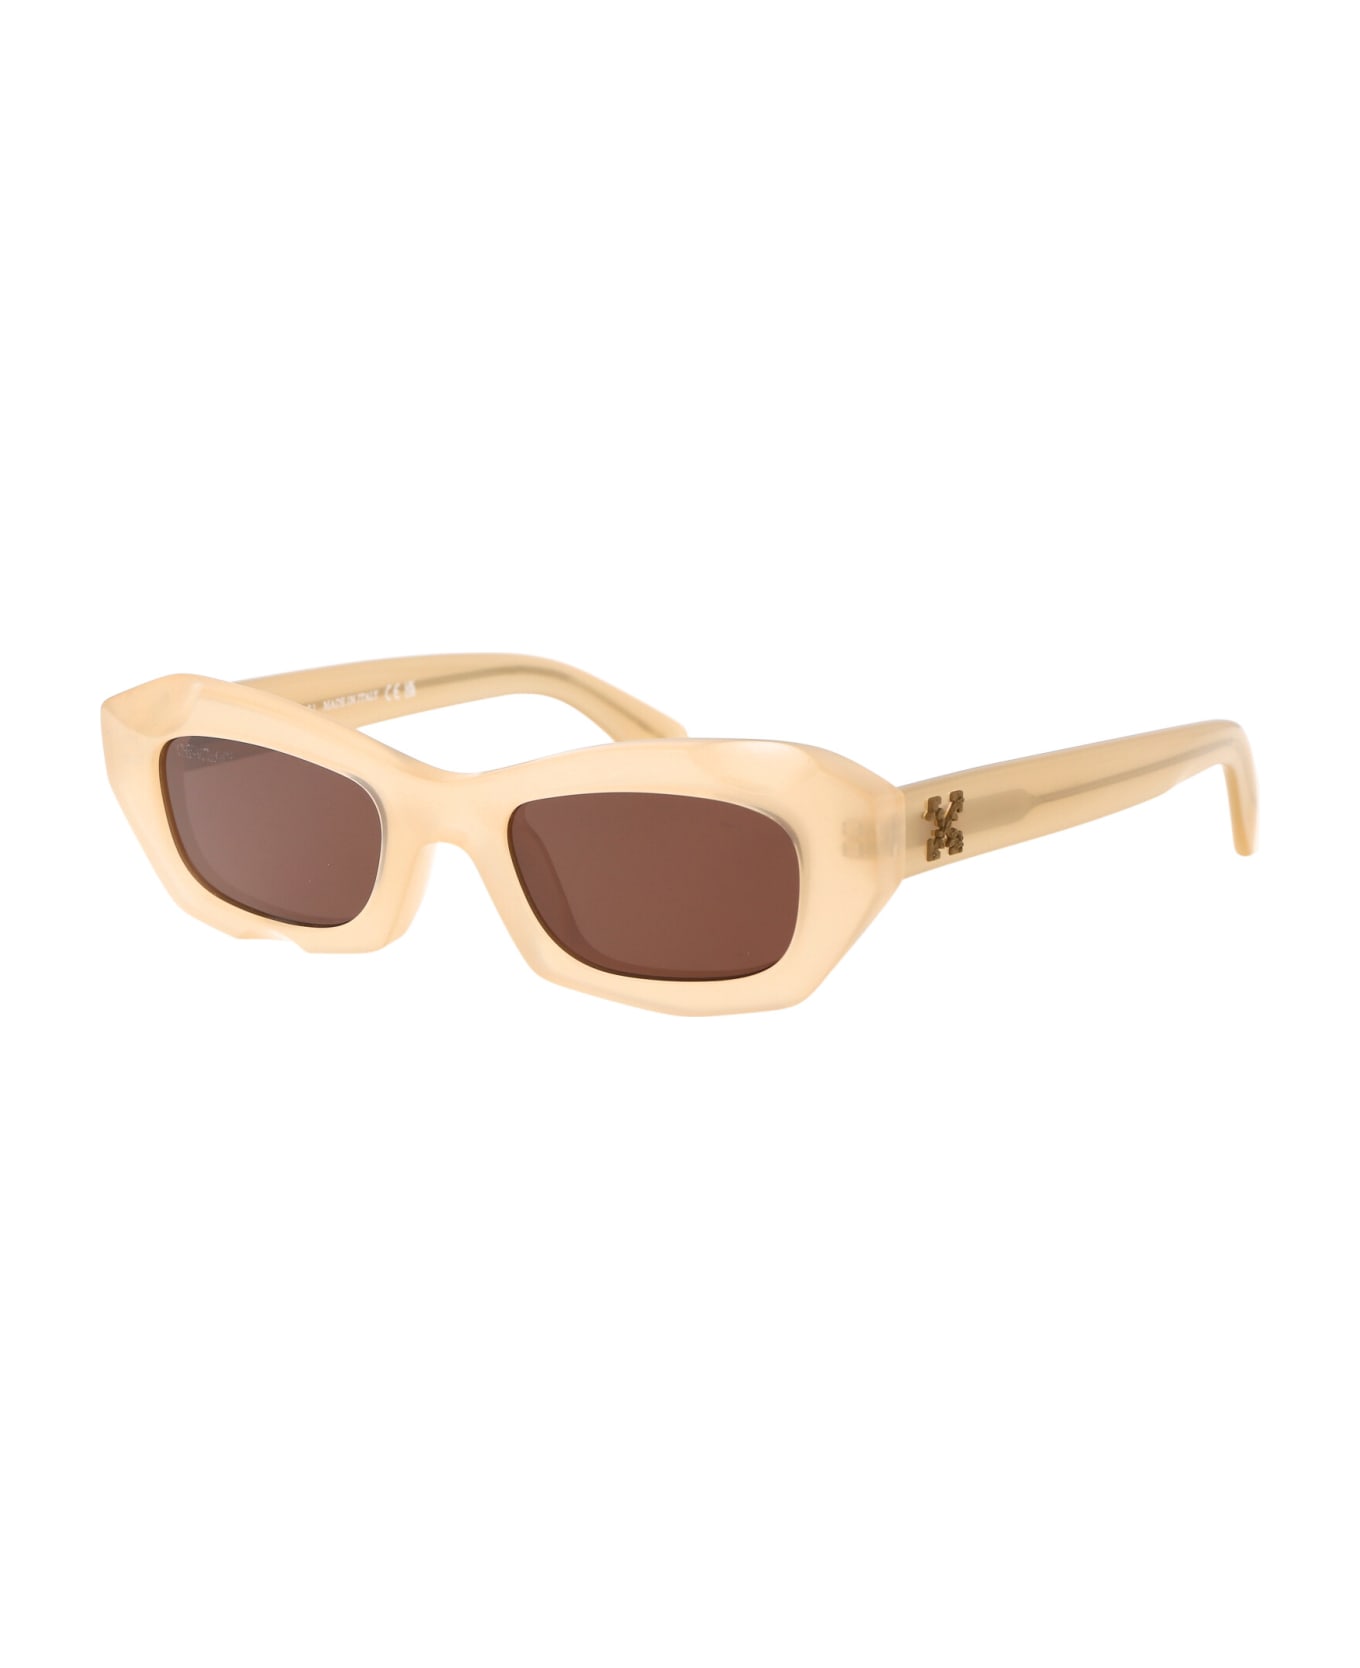 Off-White Venezia Rectangular Frame Sunglasses - 1760 SAND